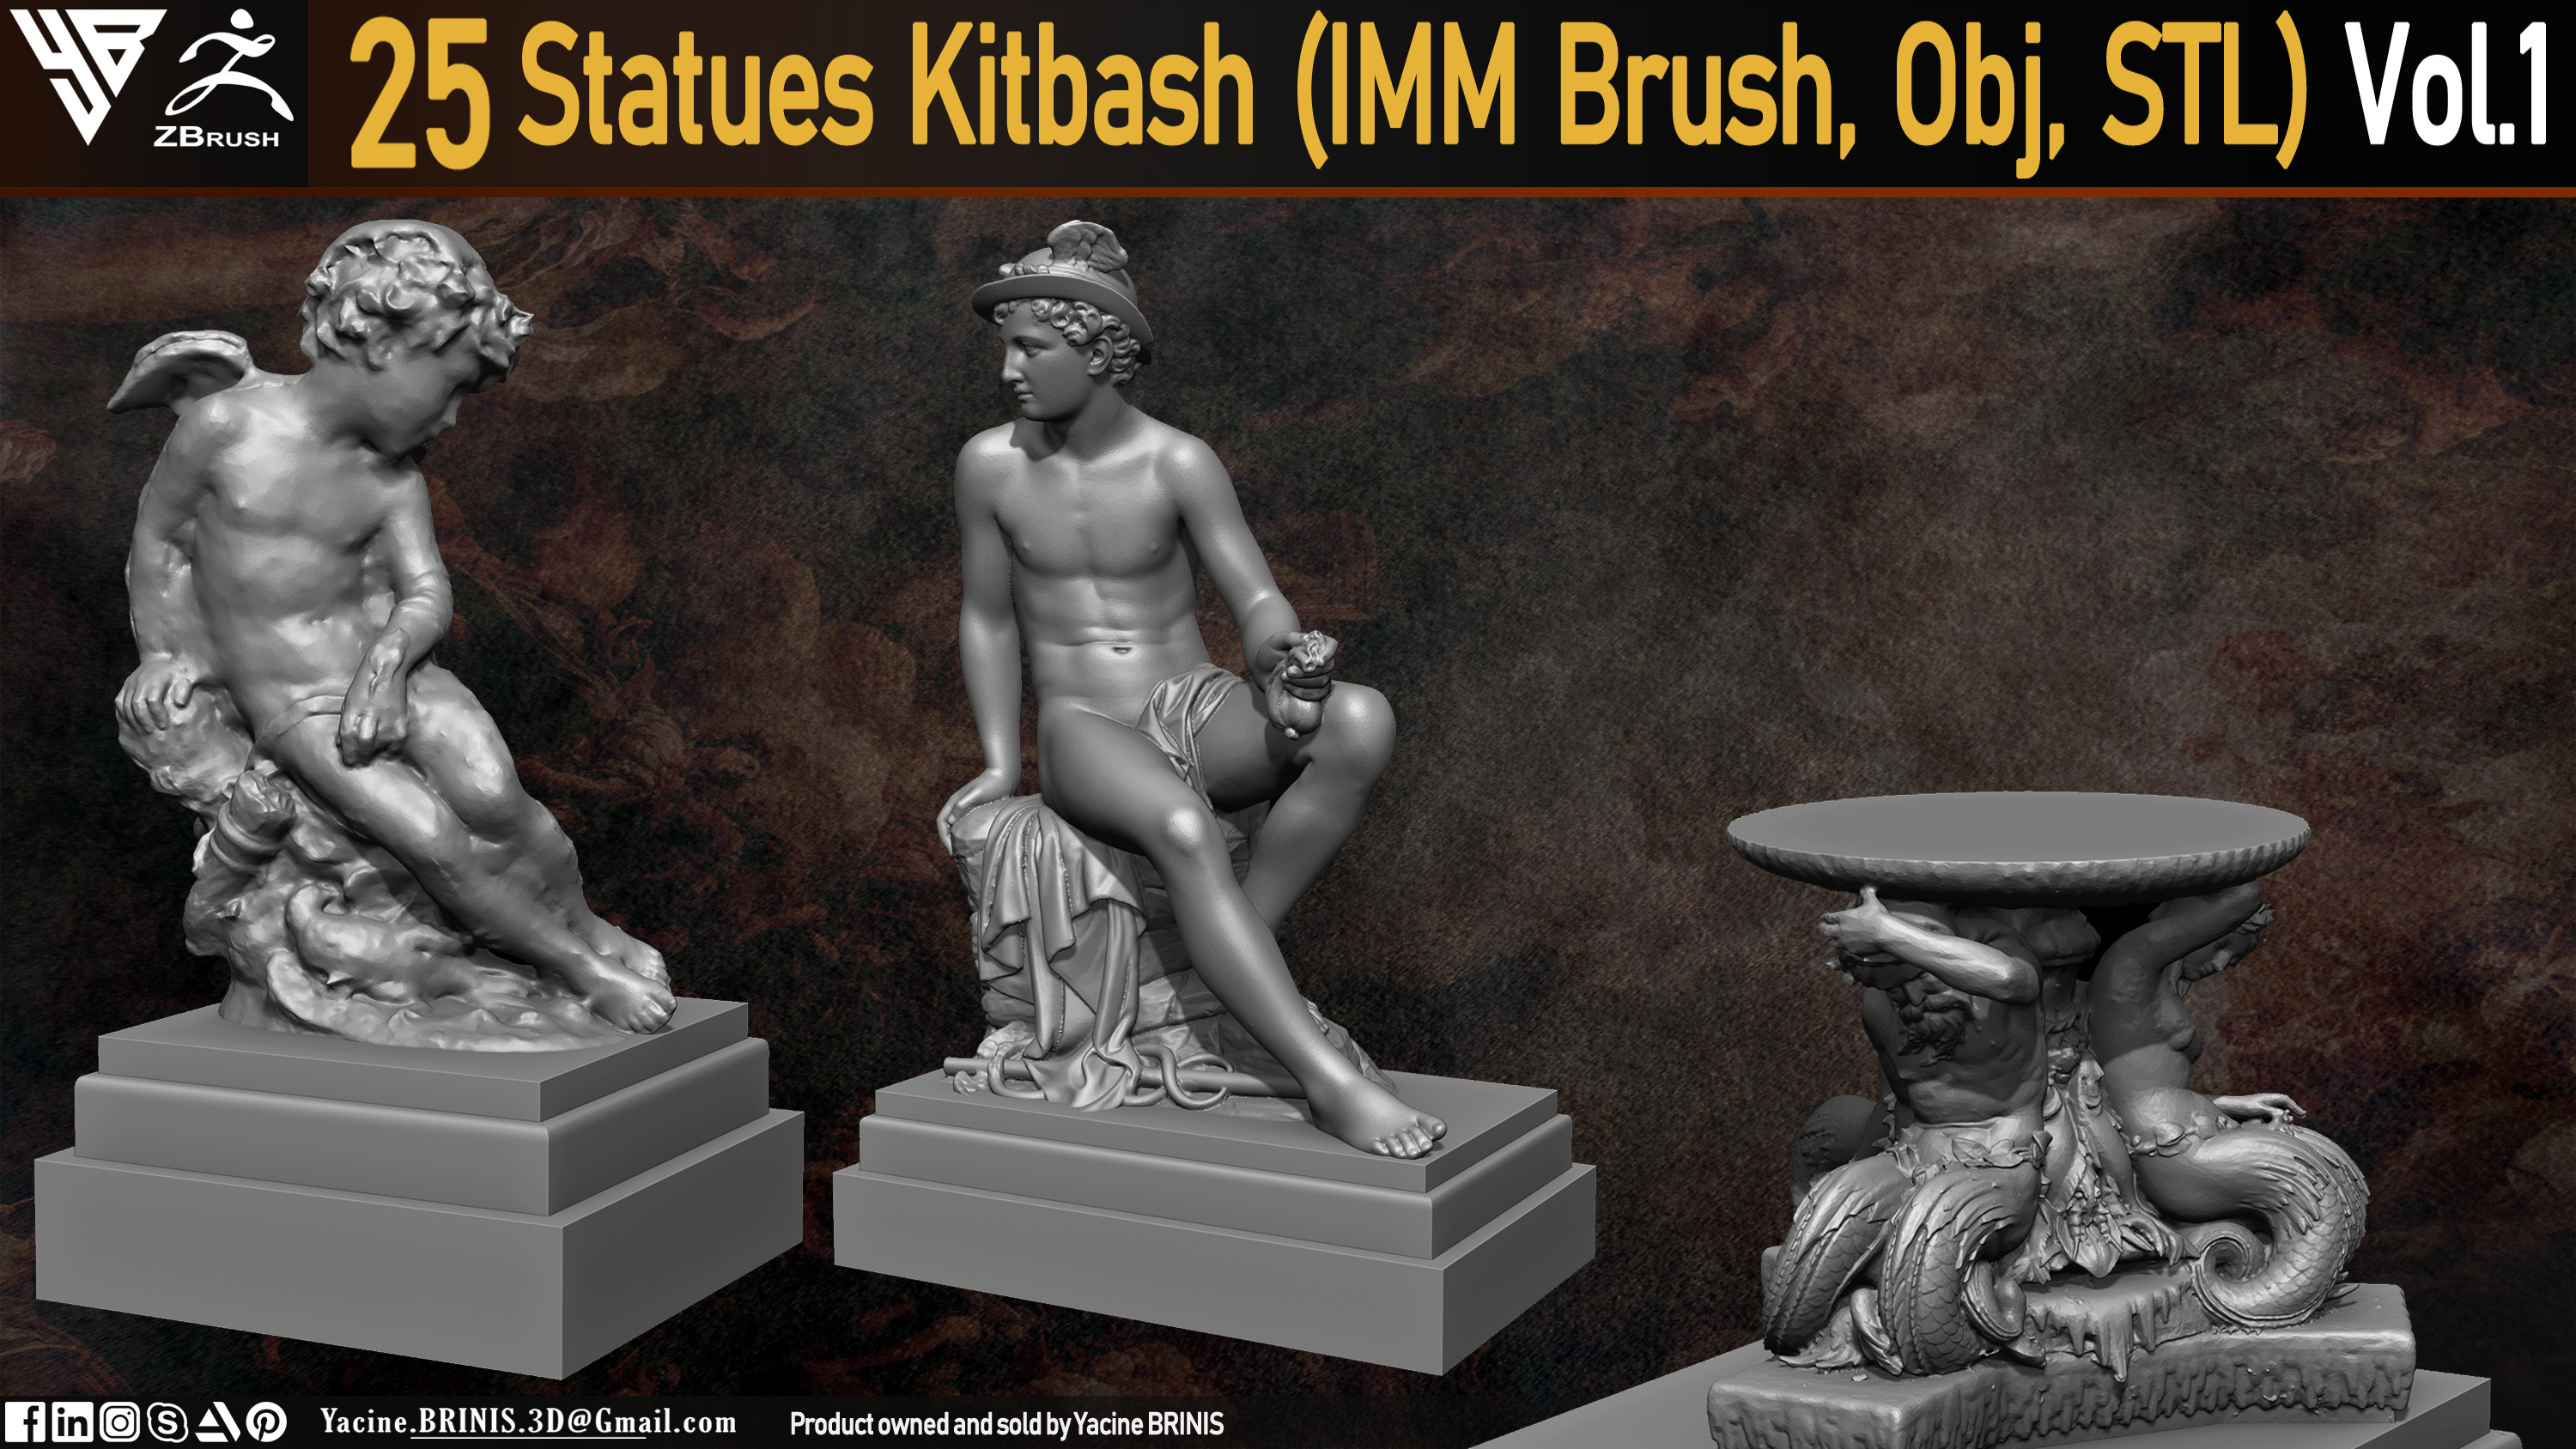 Statues Kitbash by yacine brinis Set 06